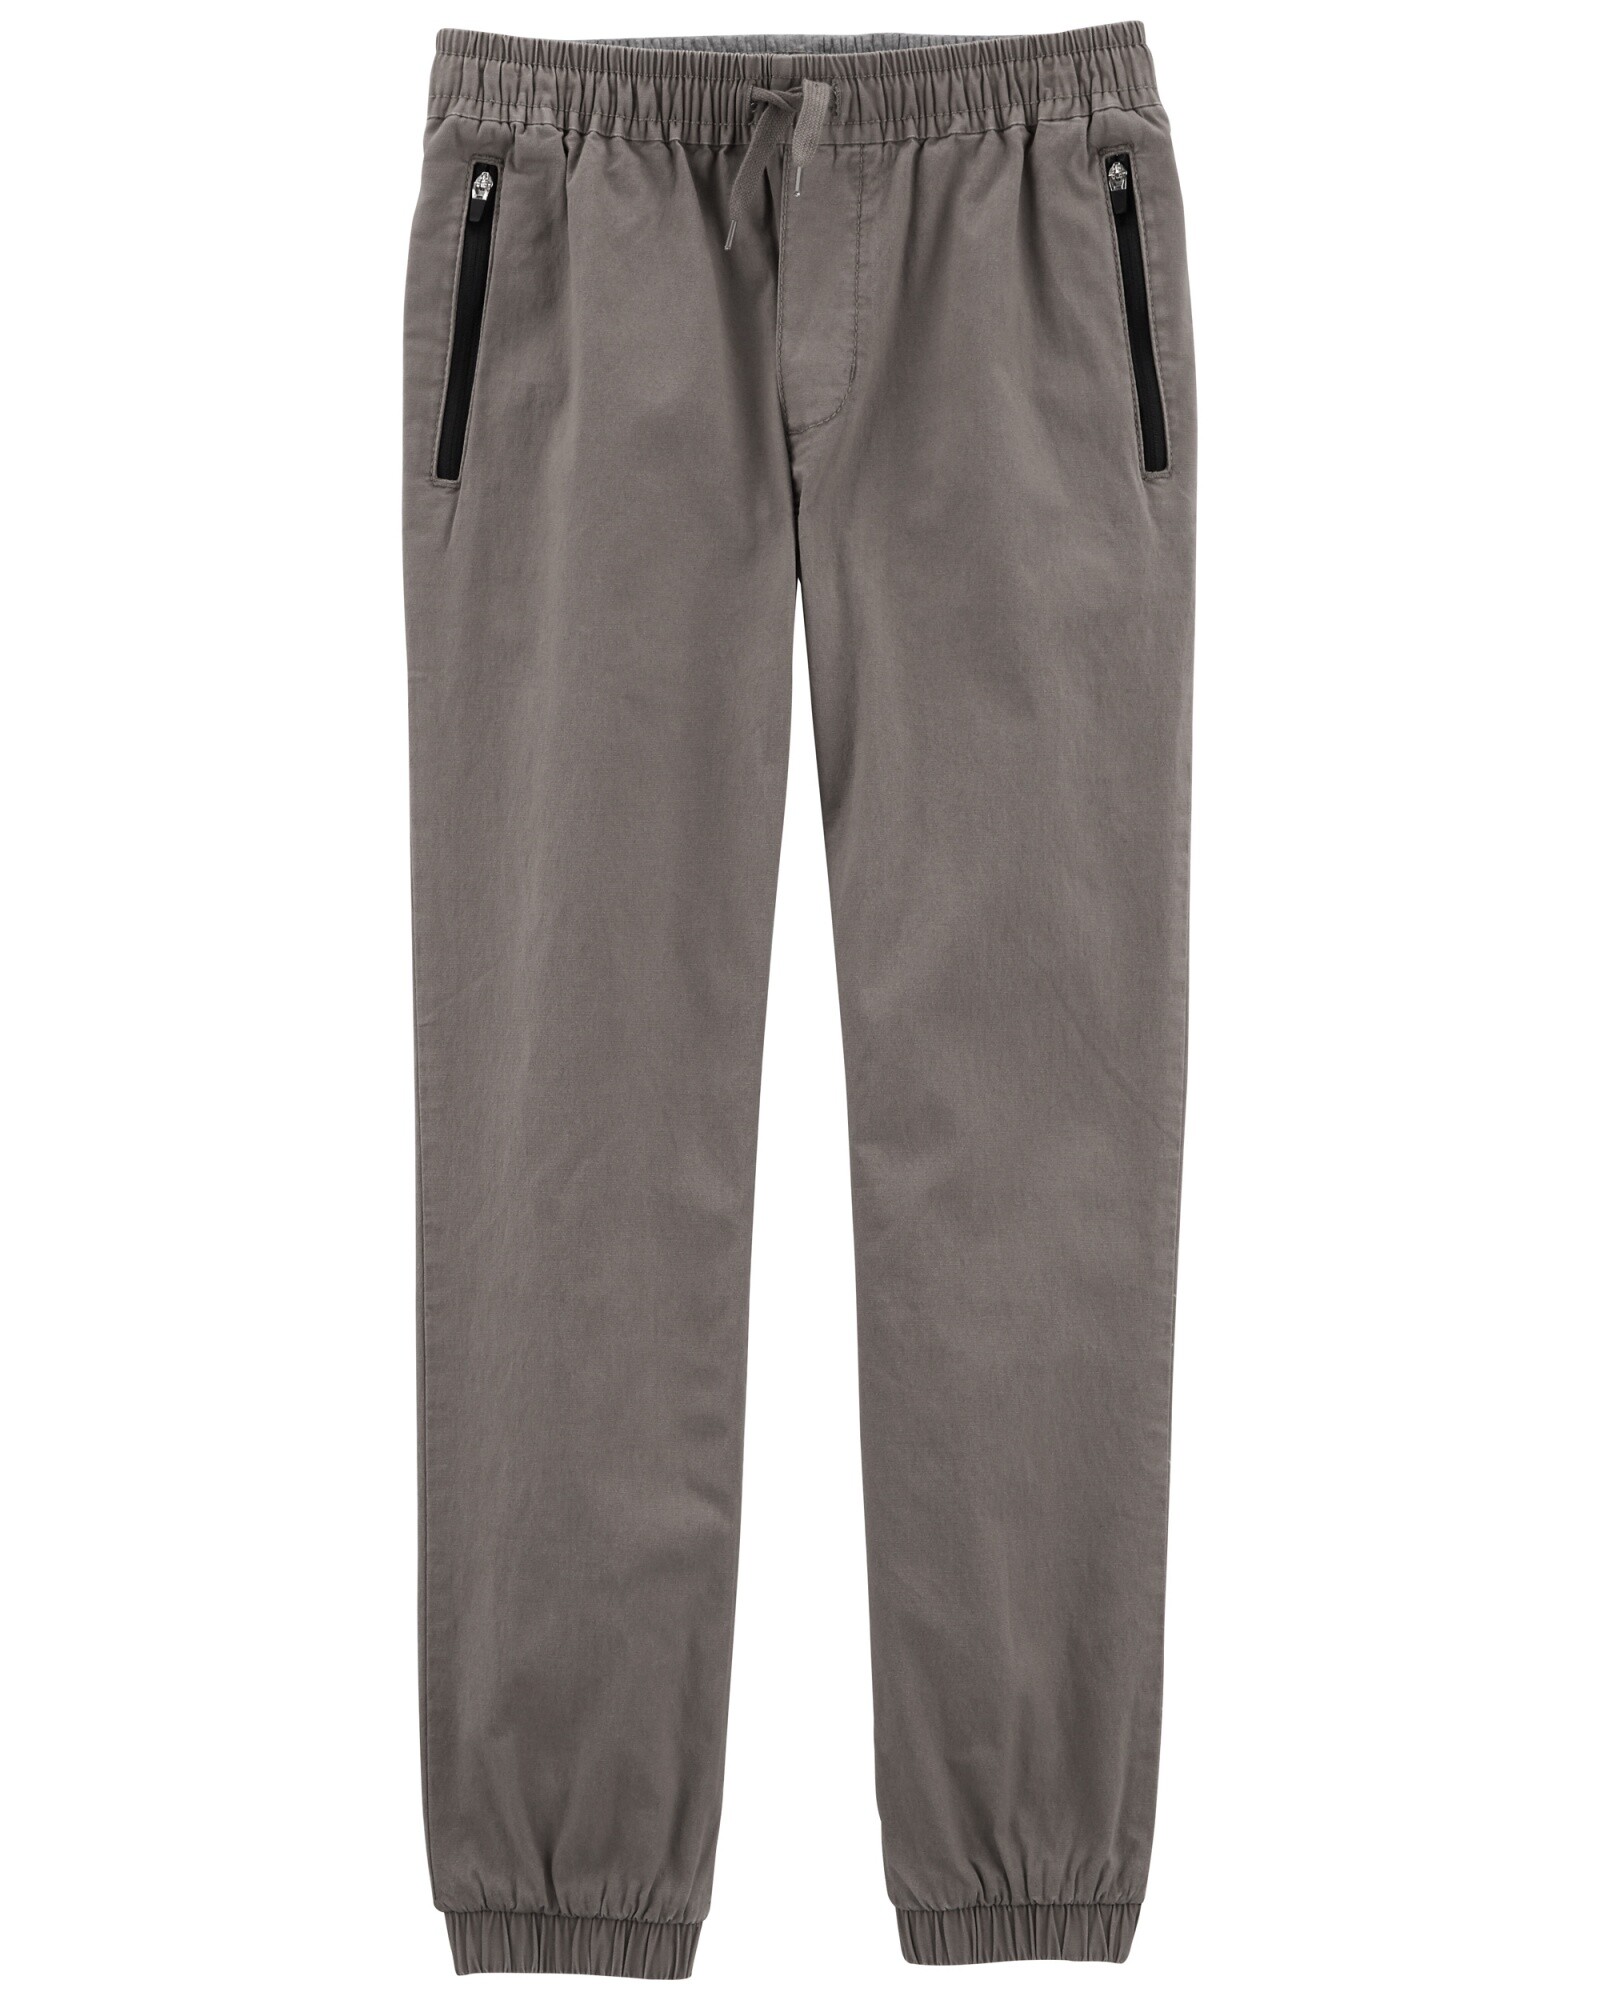 Pantalón deportivo de lona, gris Sin color